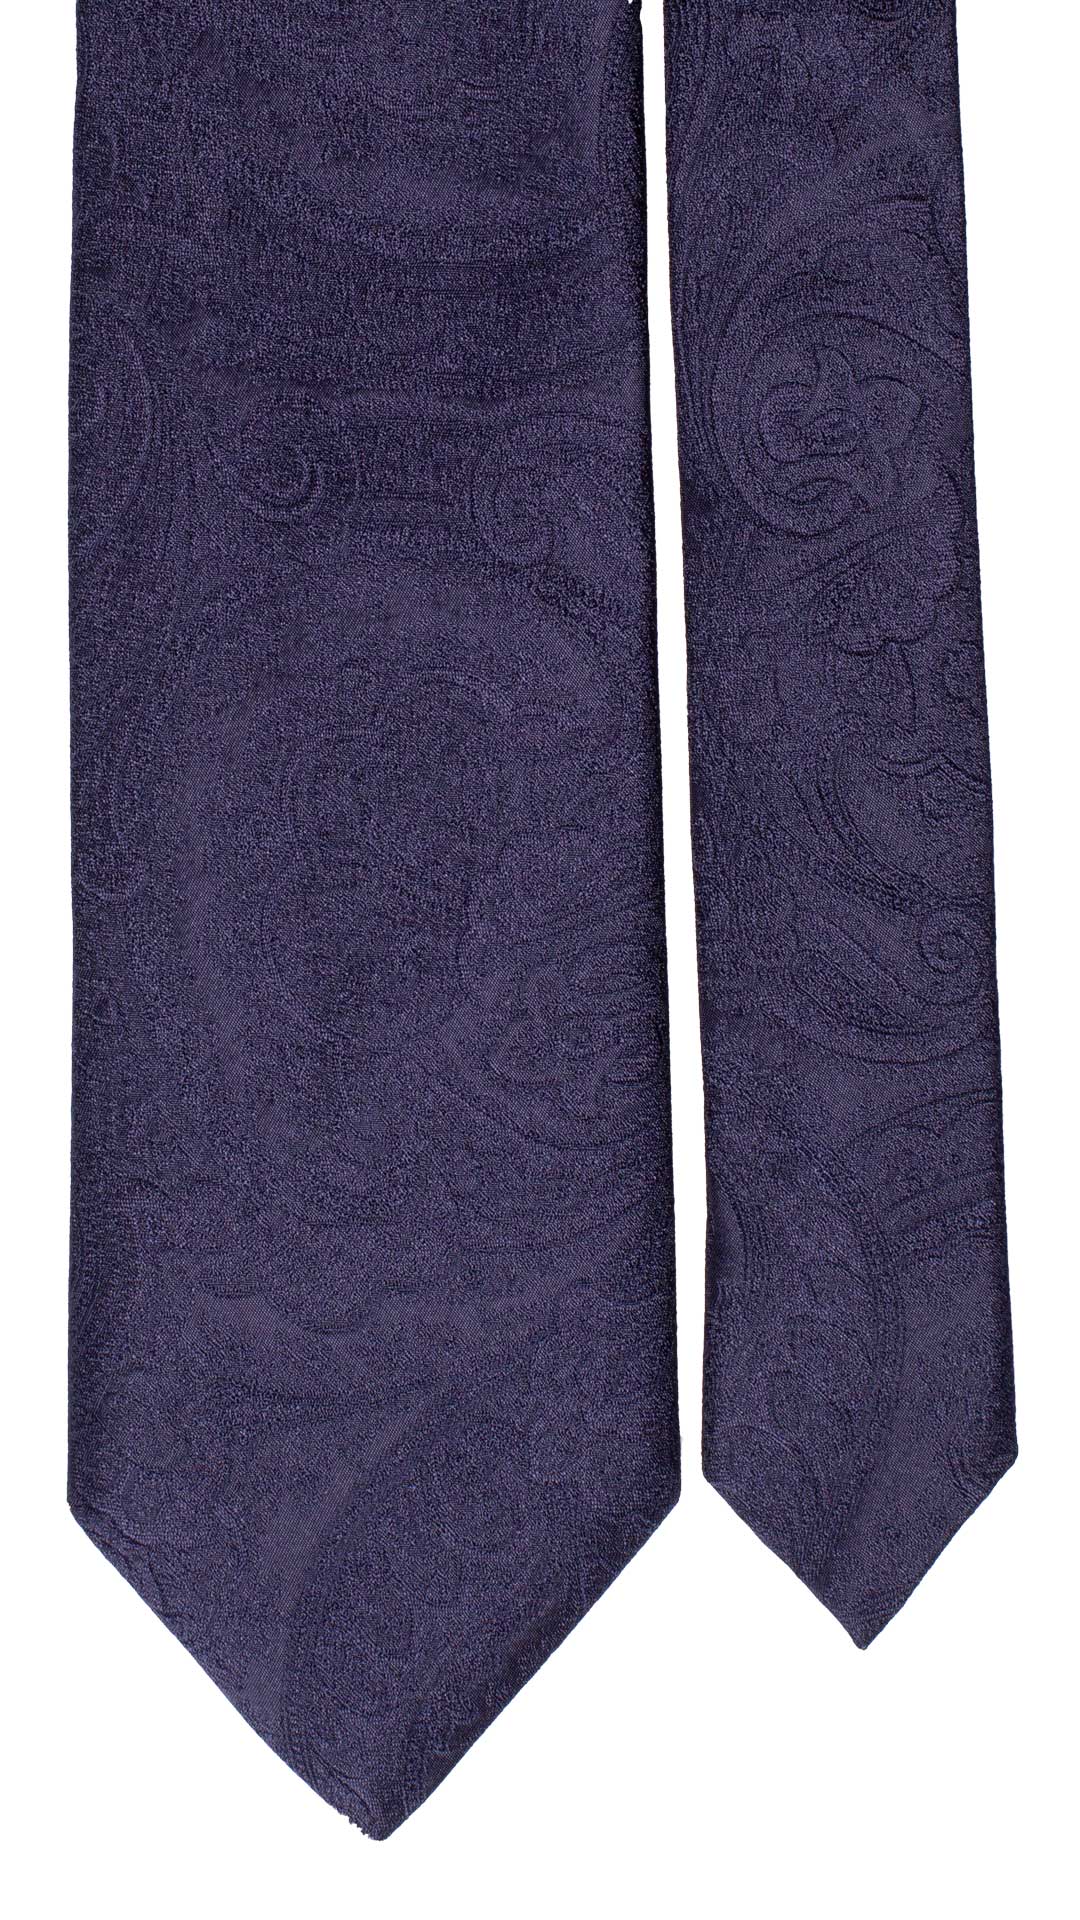 Cravatta da Cerimonia di Seta Blu Paisley Tono su Tono CY6564 Dettaglio